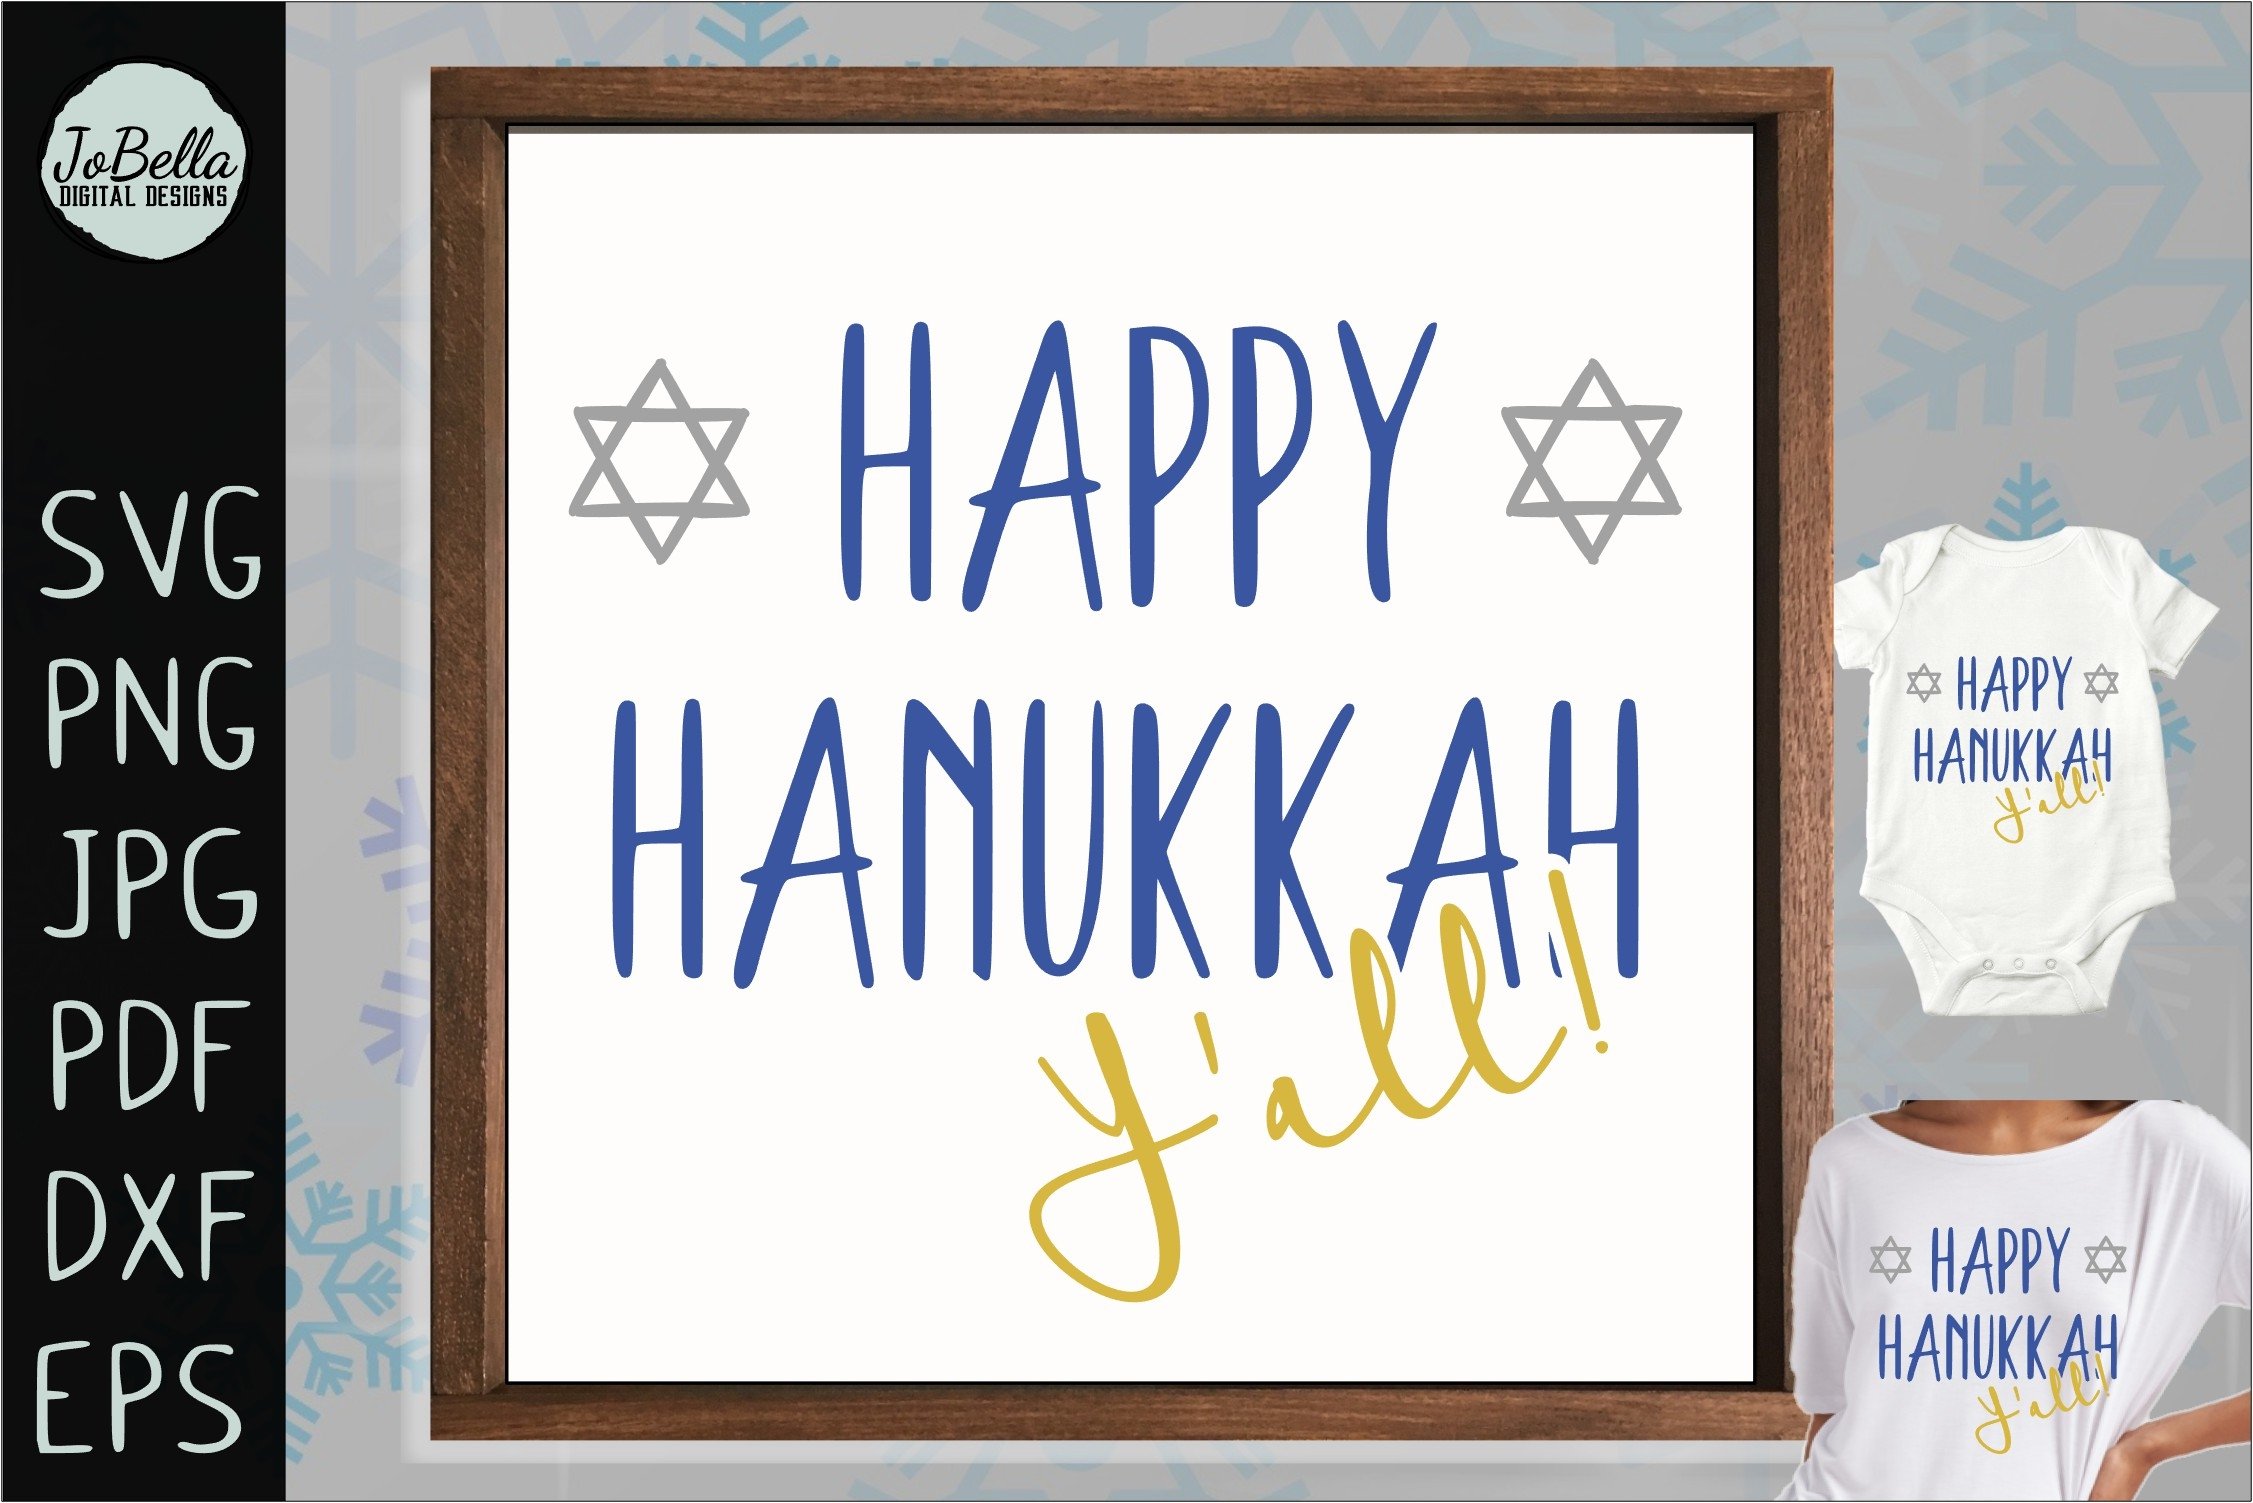 The lettering "Happy Hanukkah Y'all".